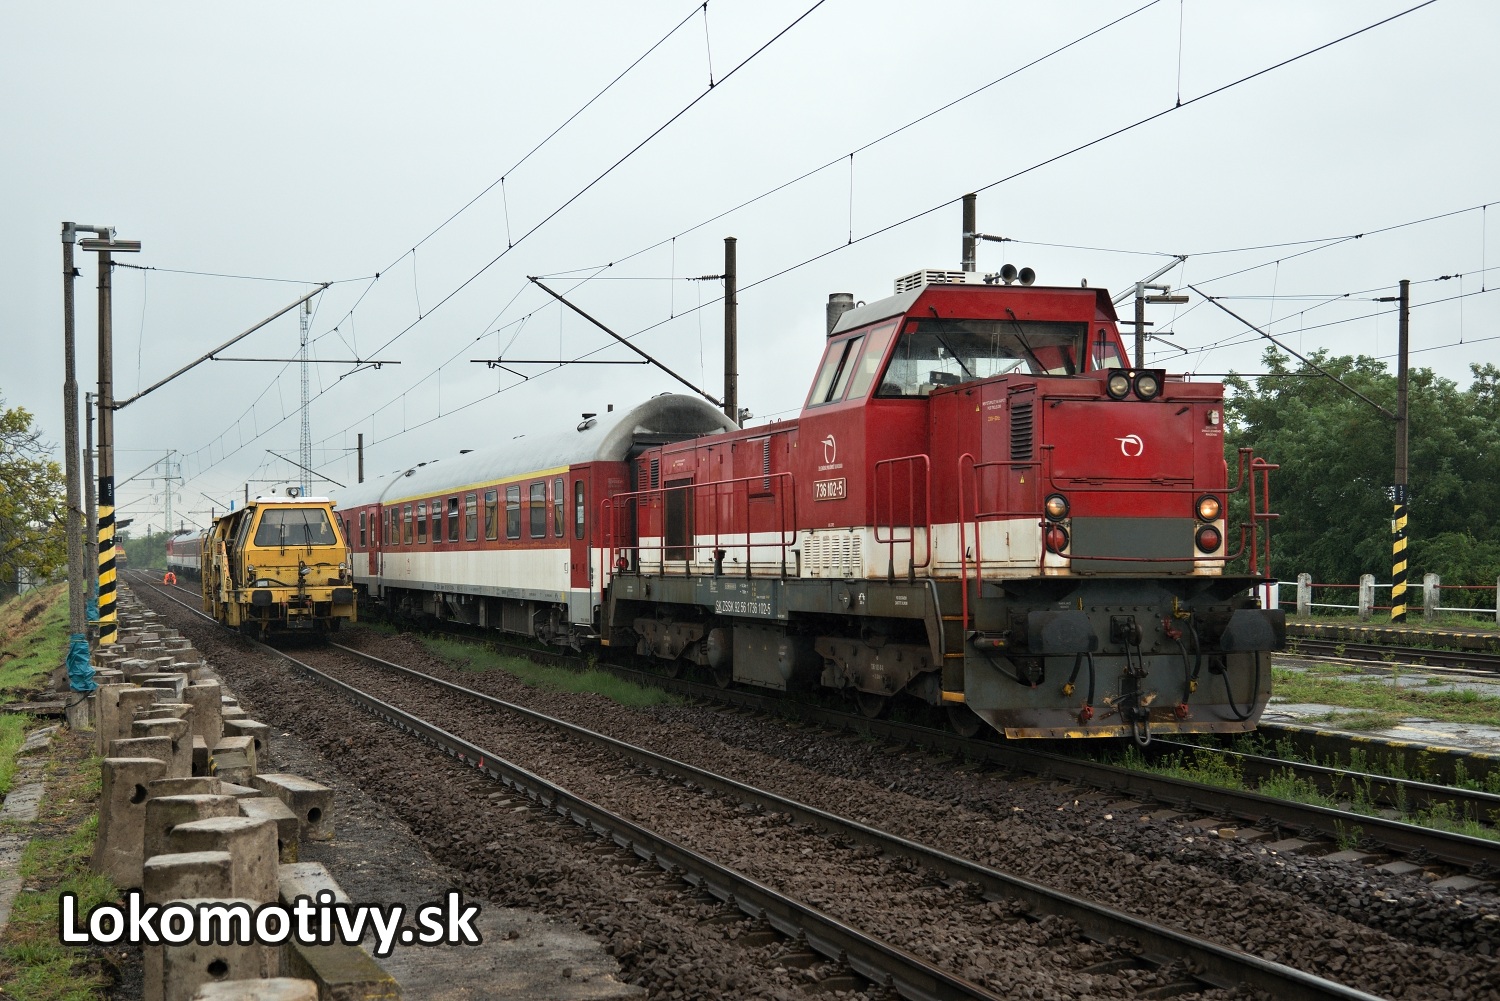 Pokazená lokomotíva v Bratislave vyradila dopravu na hlavnom ťahu v oboch smeroch